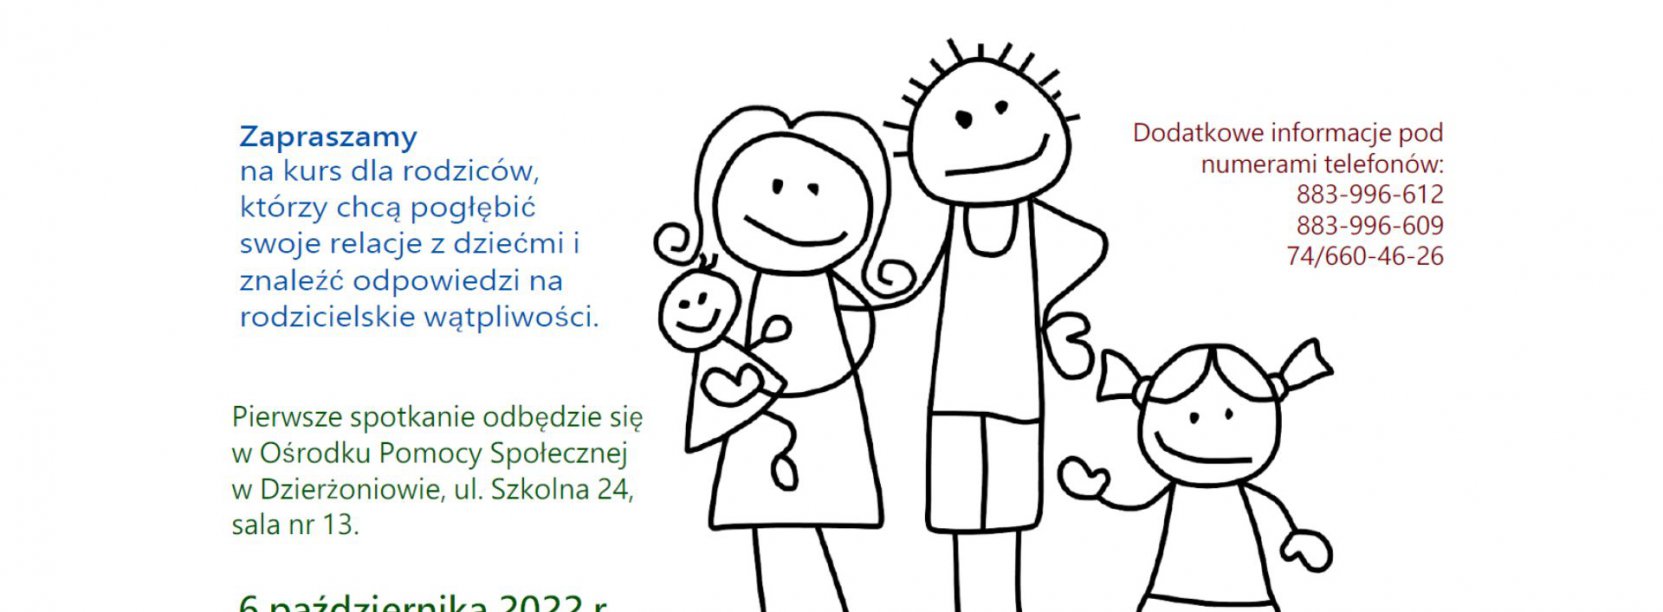 rysunek rodziny, a obok informacje zawarte w tekście